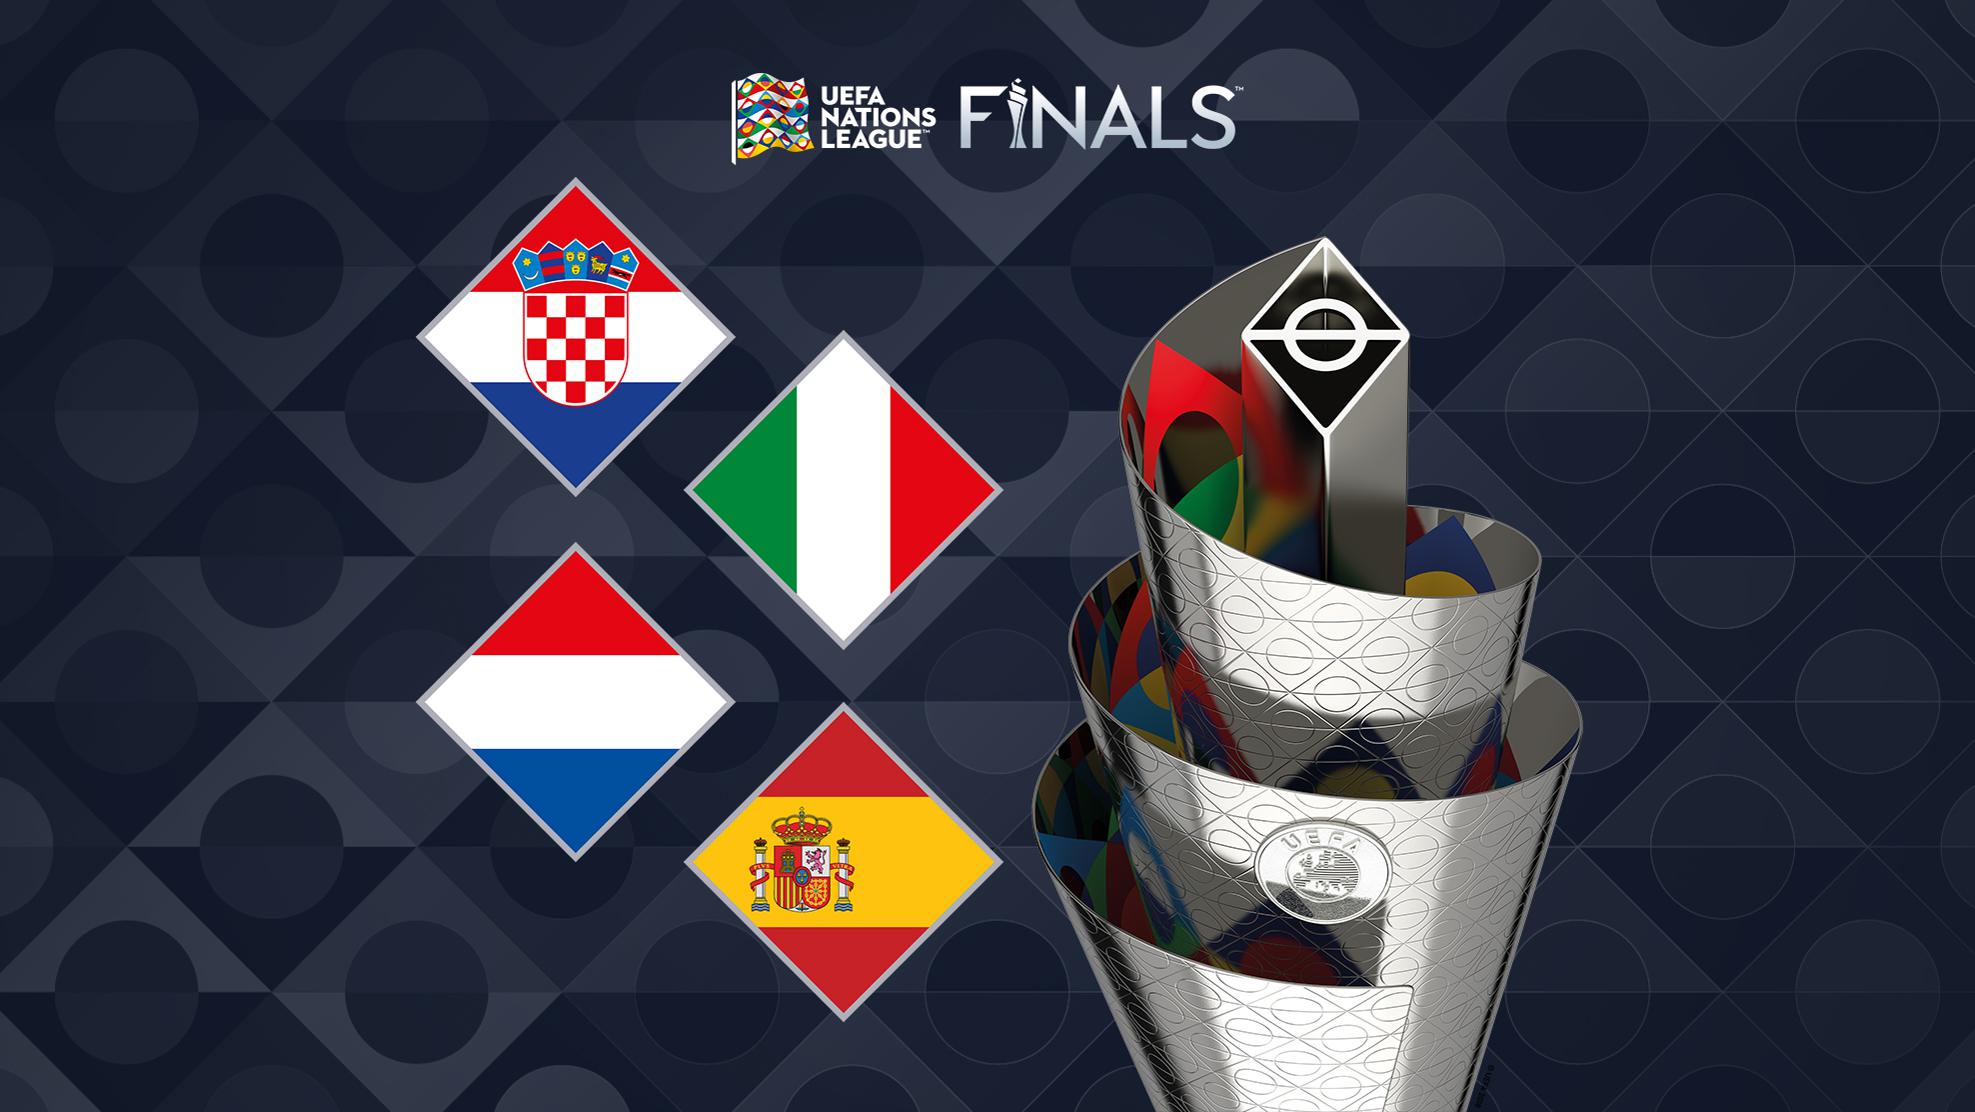 Officiel: Le Final Four de la Ligue des Nations se jouera dans ce pays